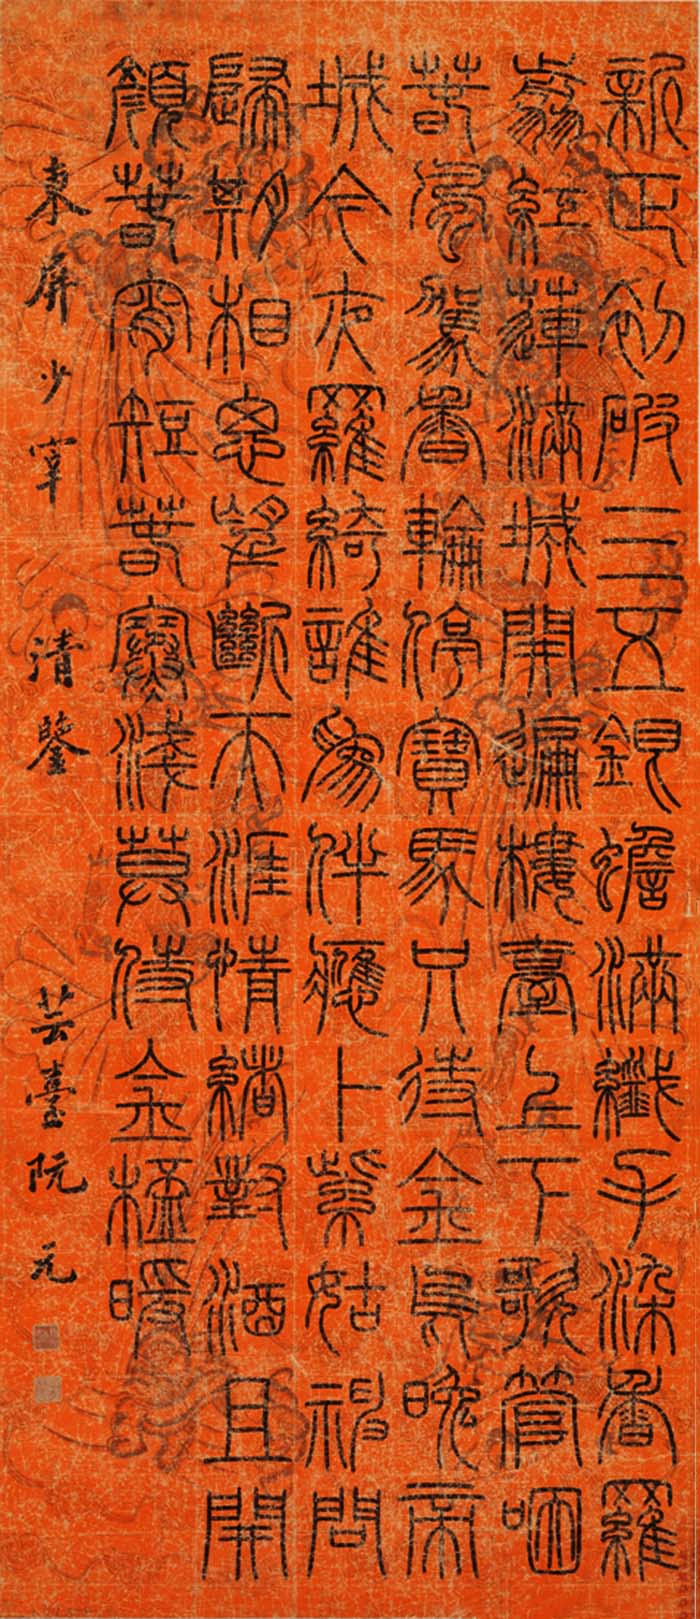 阮元《篆书欧阳修蓦山溪词》-台北故宫博物院藏(图1)